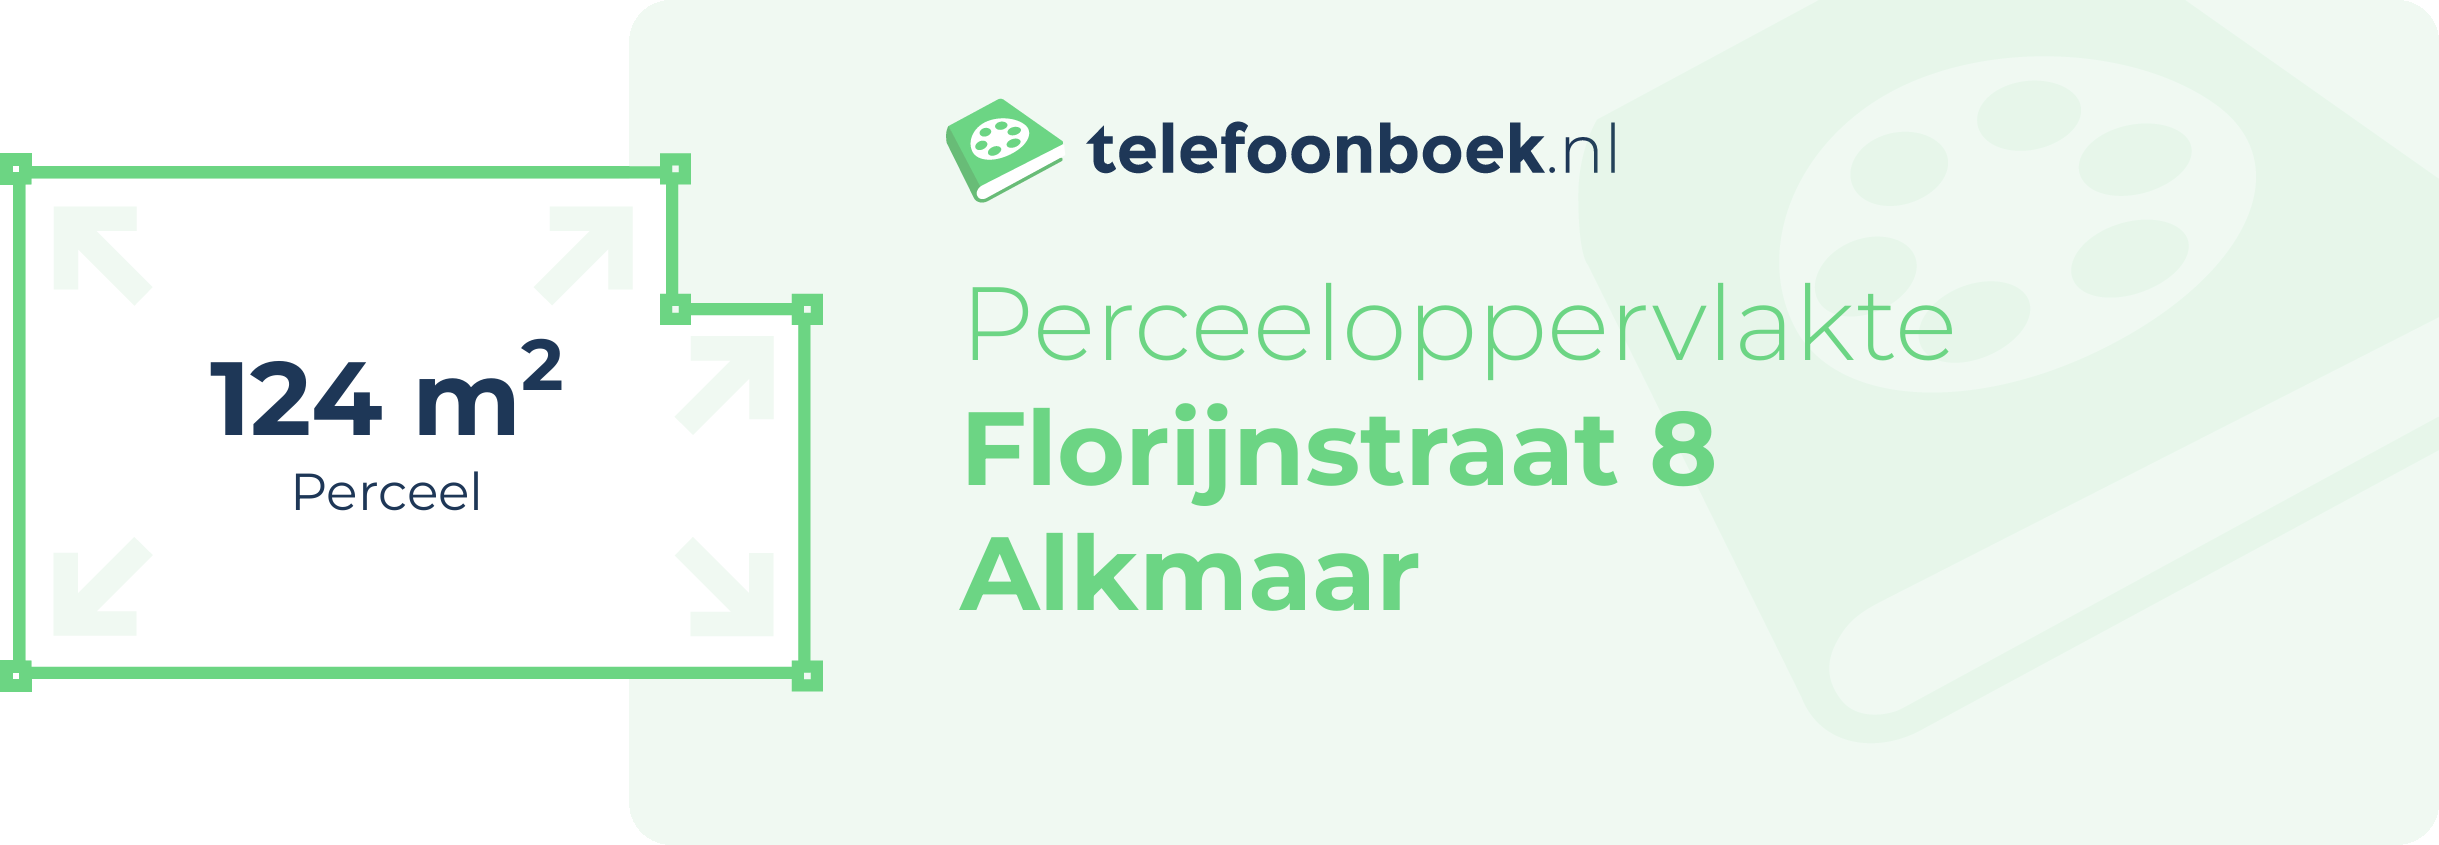 Perceeloppervlakte Florijnstraat 8 Alkmaar